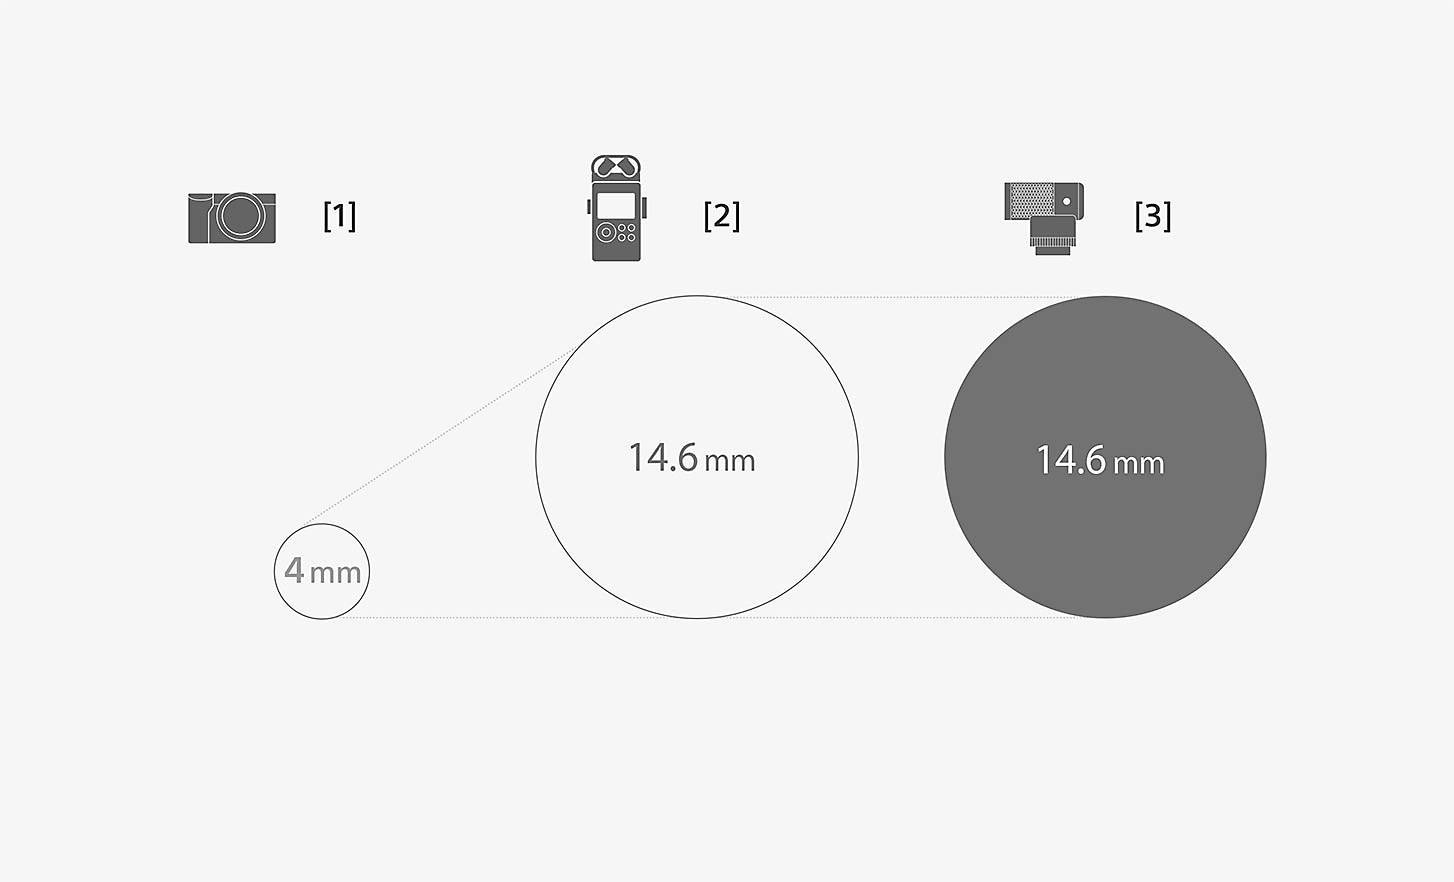 Ilustração que compara as dimensões da cápsula do microfone ECM-G1 com um microfone padrão incorporado